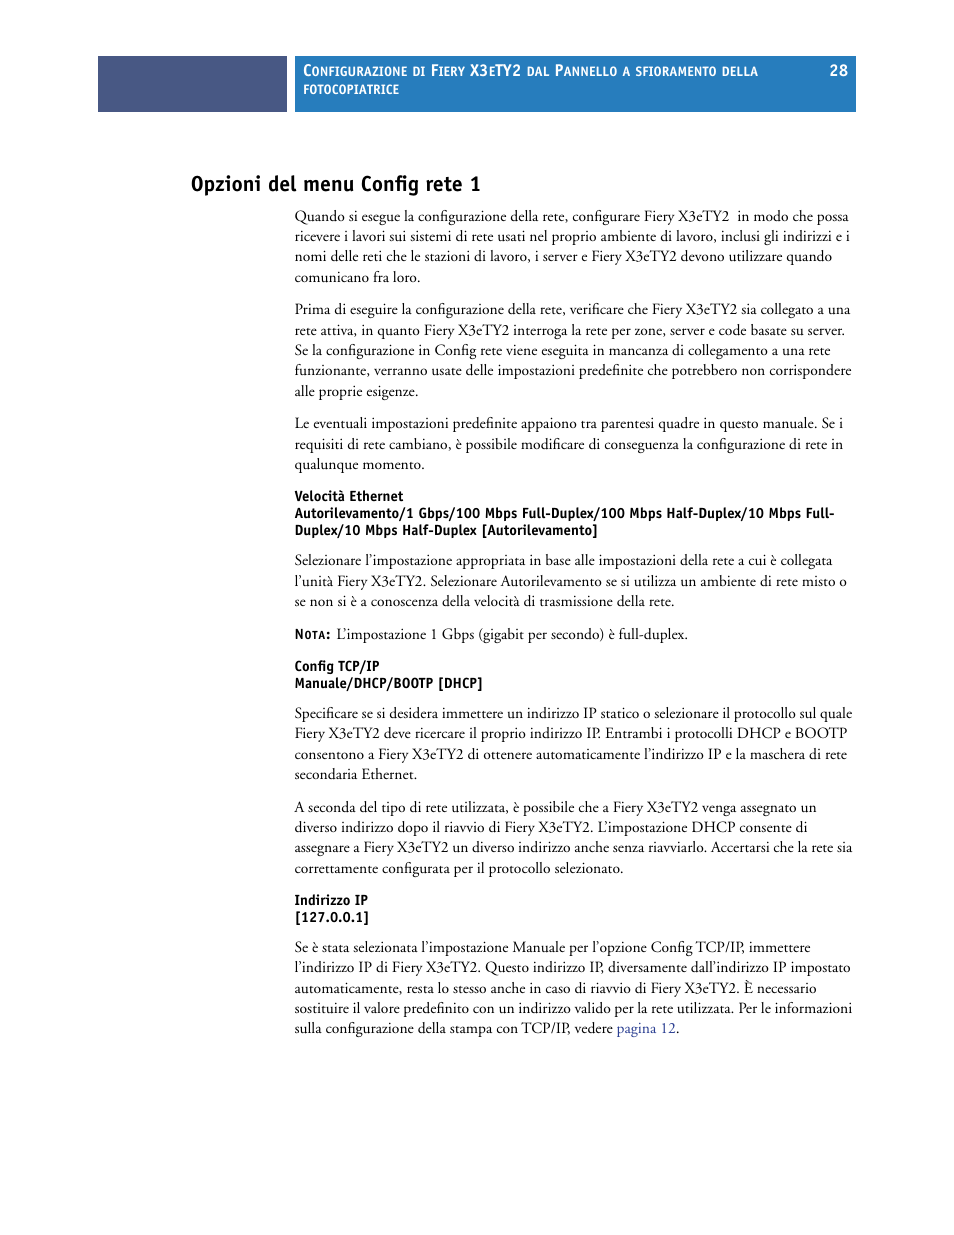 Opzioni del menu config rete 1 | Konica Minolta bizhub PRO C6500P Manuale d'uso | Pagina 28 / 54